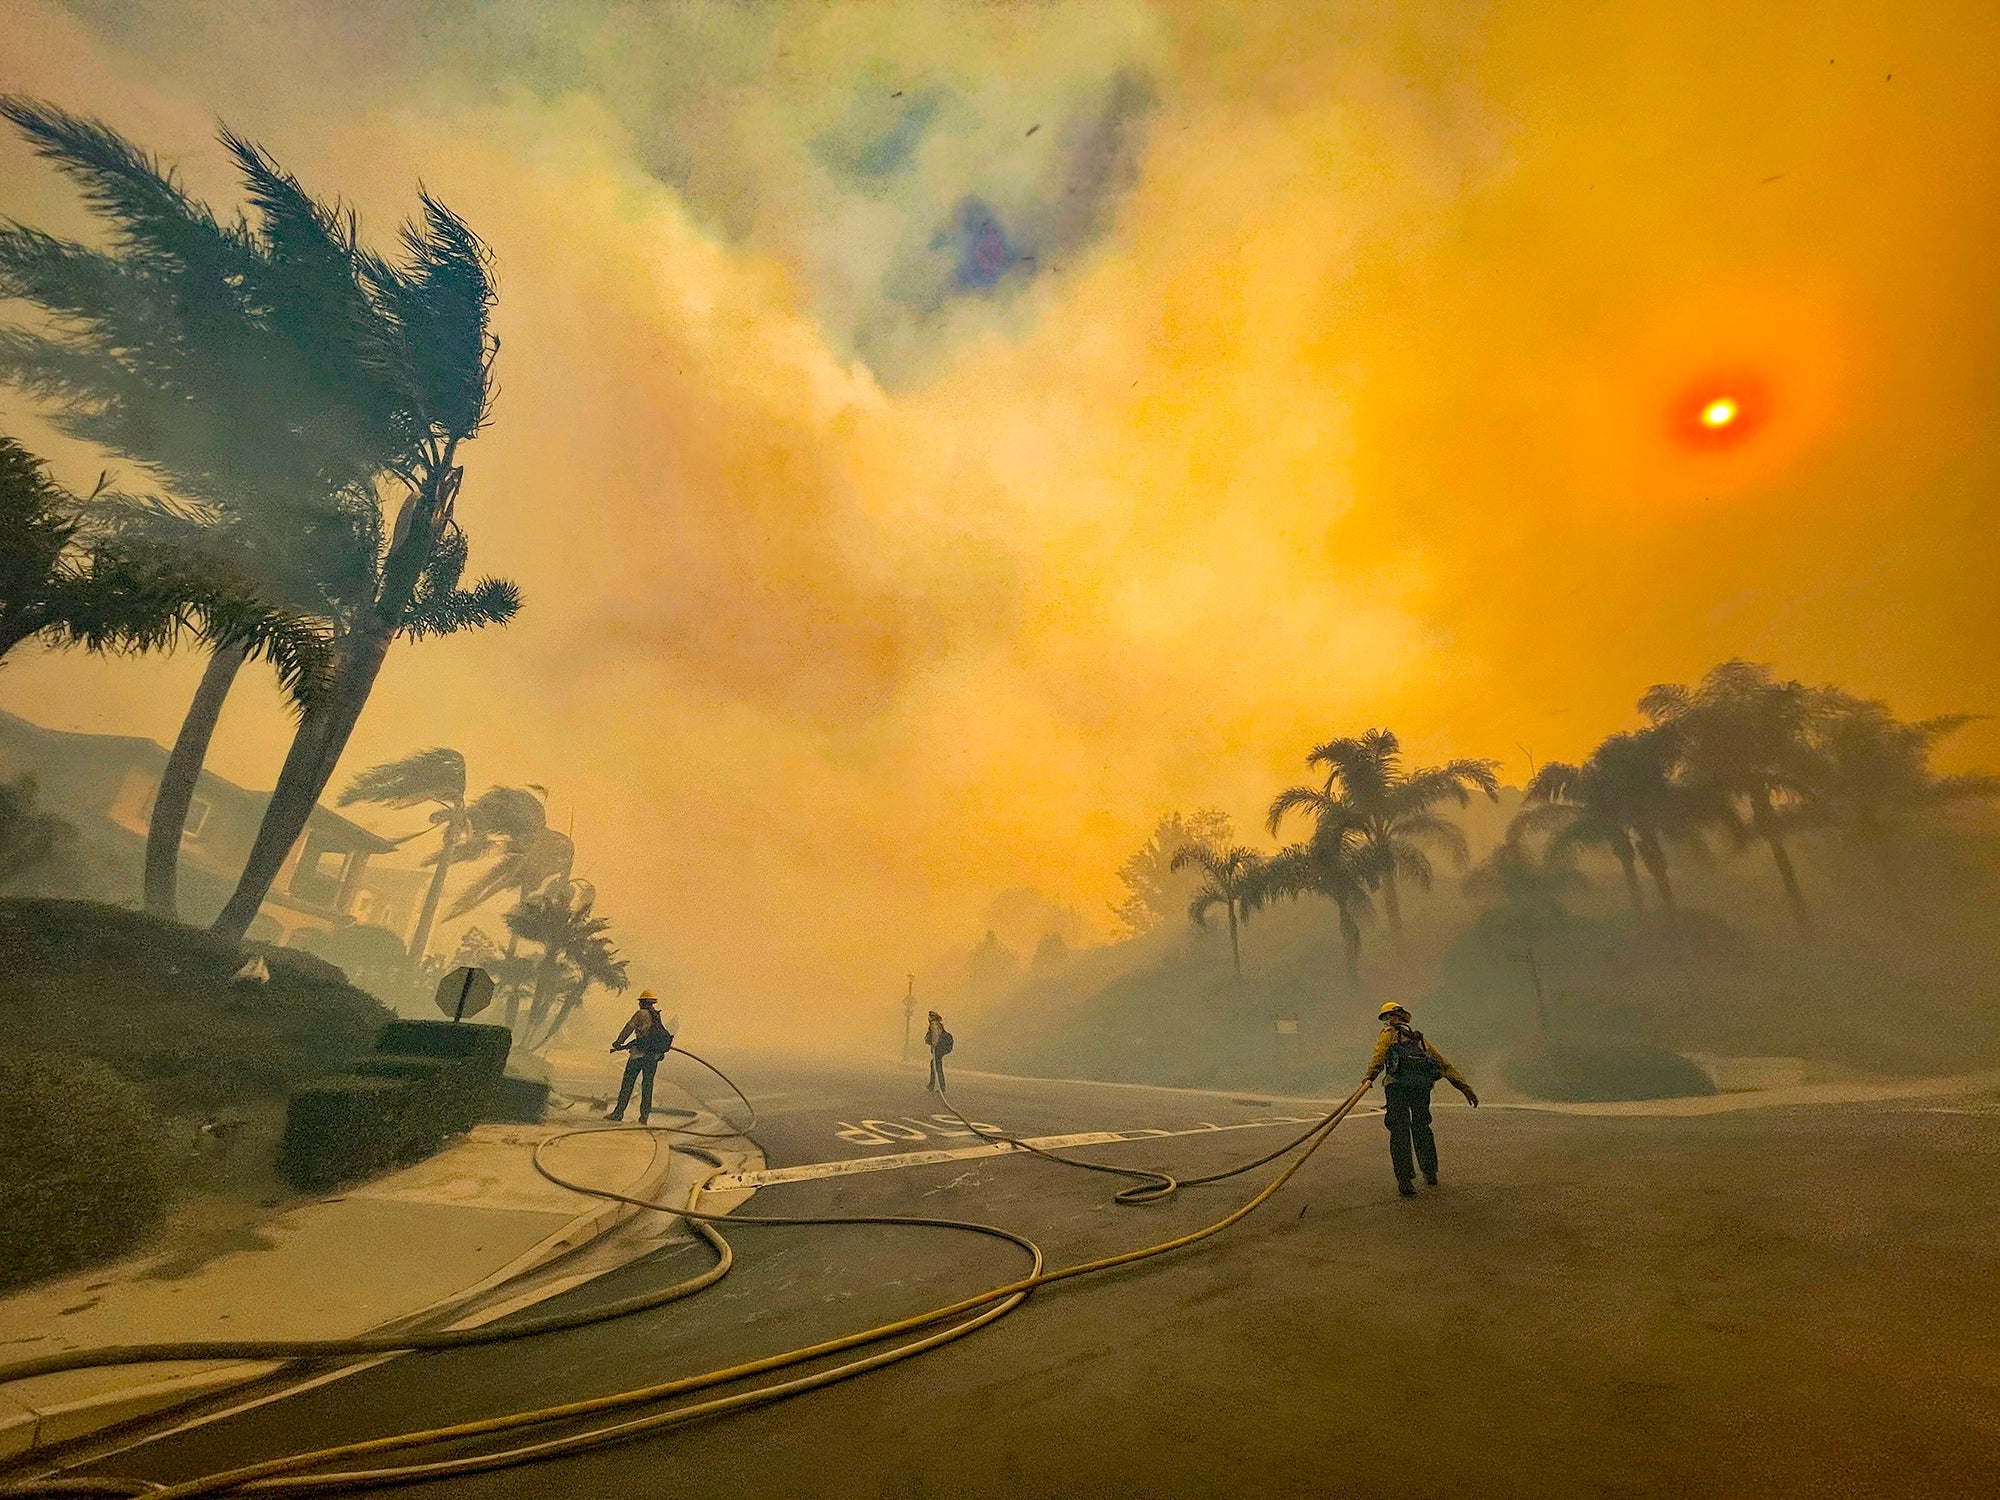 Firefighters walk in a neighborhood filled with orange smoke.